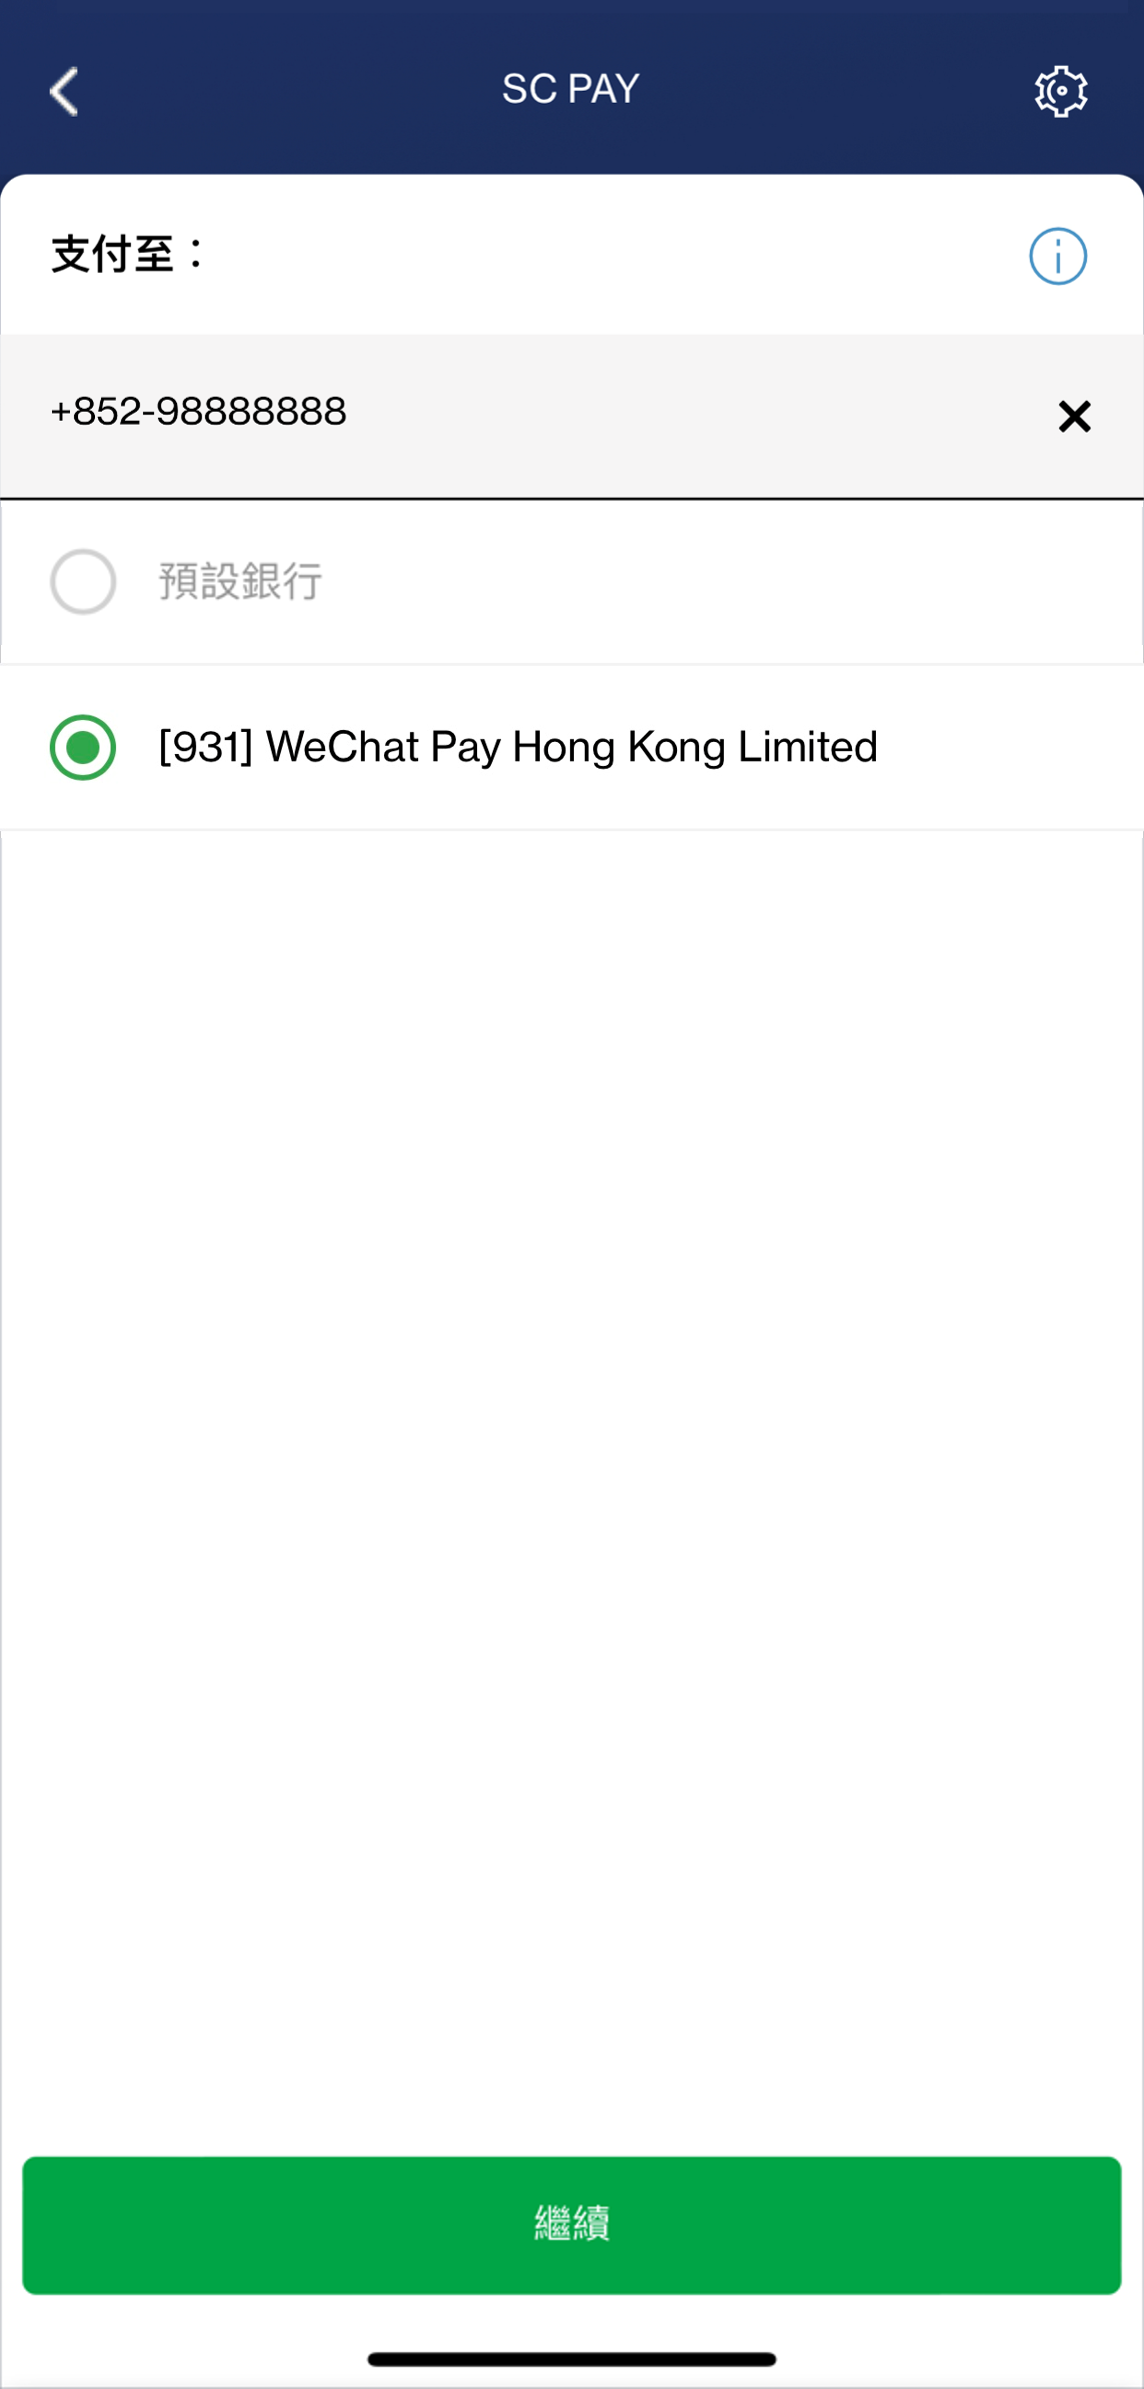 輸入步驟1時於WeChat Pay HK登記轉數快的香港流動電話號碼｡ 如WeChat Pay HK是您的轉數快預設收款銀行，請選擇「預設銀行」。否則請選擇「指定銀行」及「[931] WeChat Pay Hong Kong Limited 」